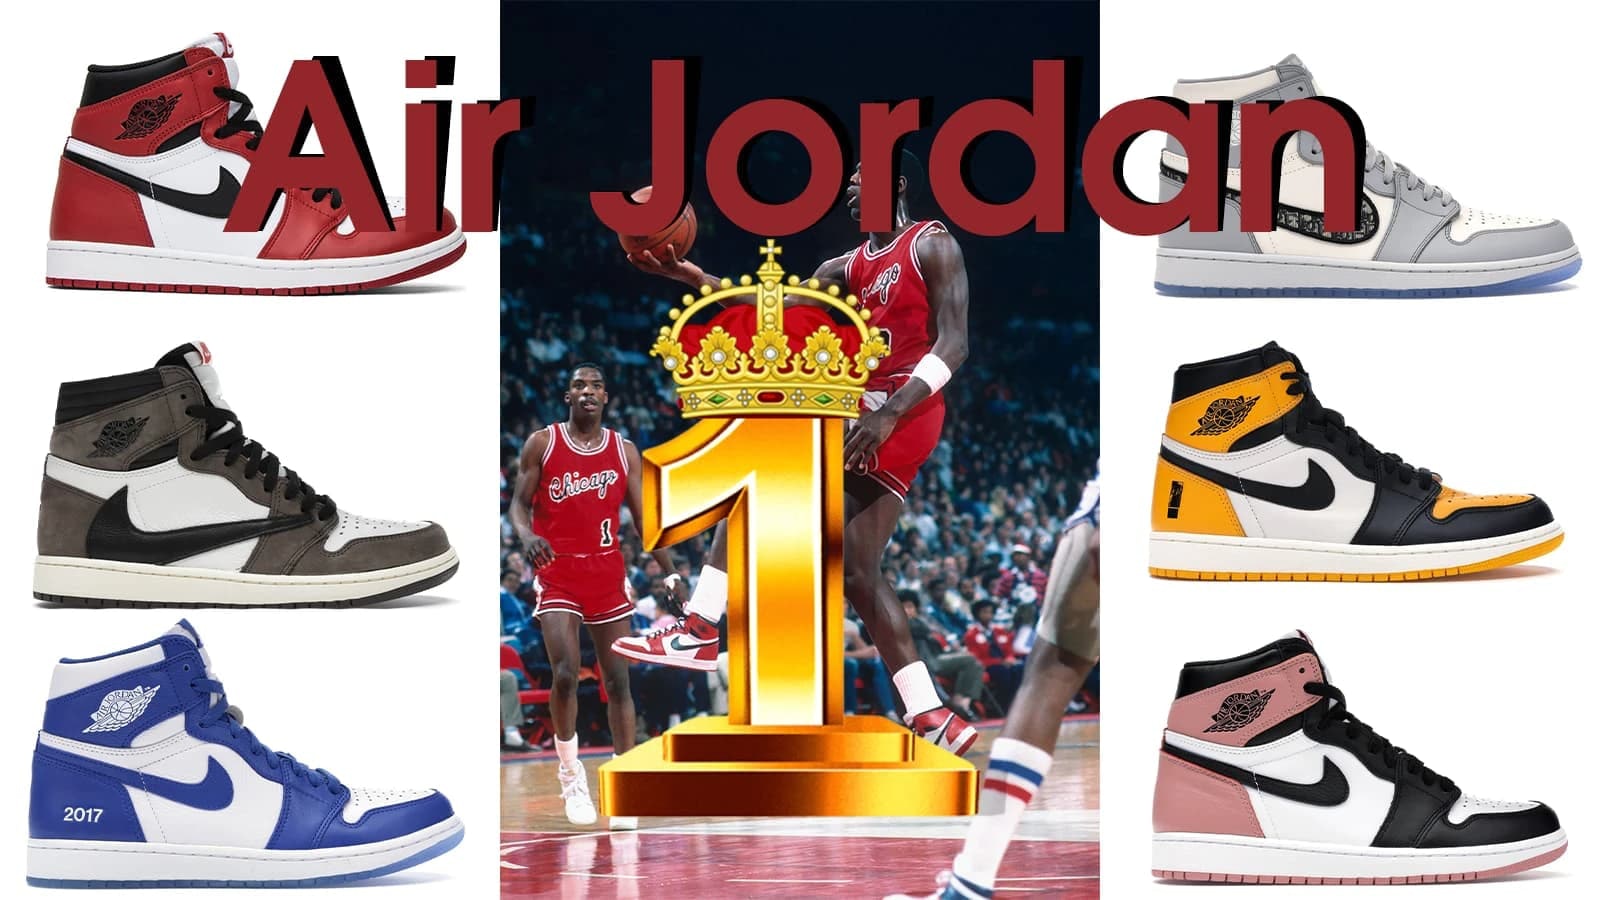 Air Jordan 1 Review